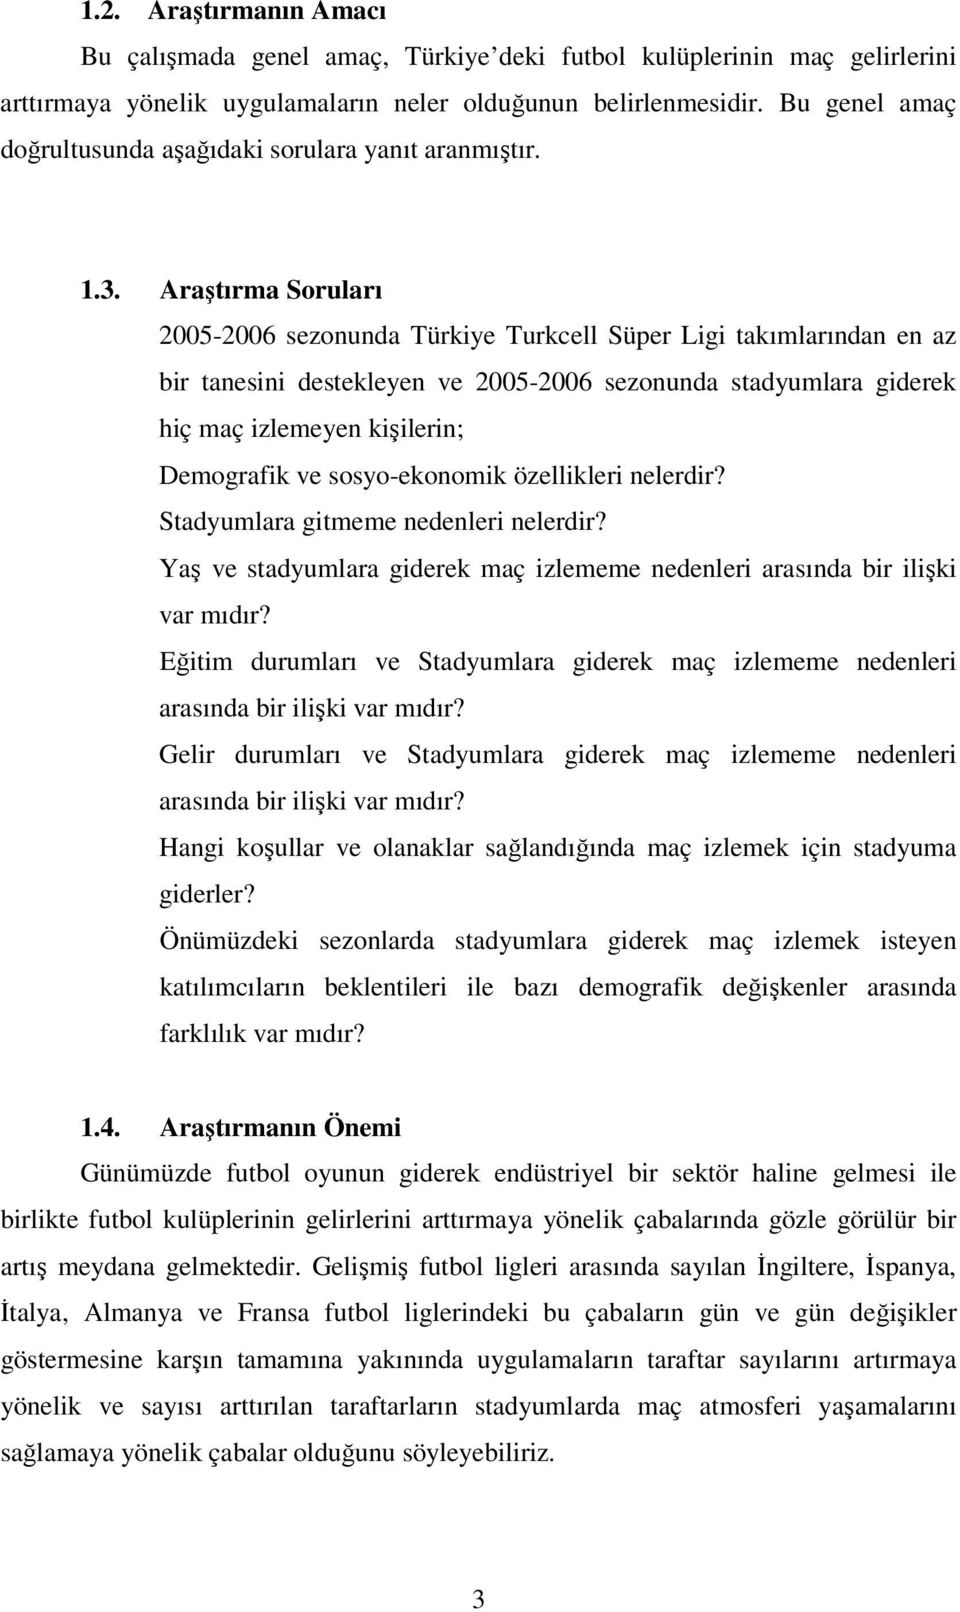 Araştırma Soruları 2005-2006 sezonunda Türkiye Turkcell Süper Ligi takımlarından en az bir tanesini destekleyen ve 2005-2006 sezonunda stadyumlara giderek hiç maç izlemeyen kişilerin; Demografik ve